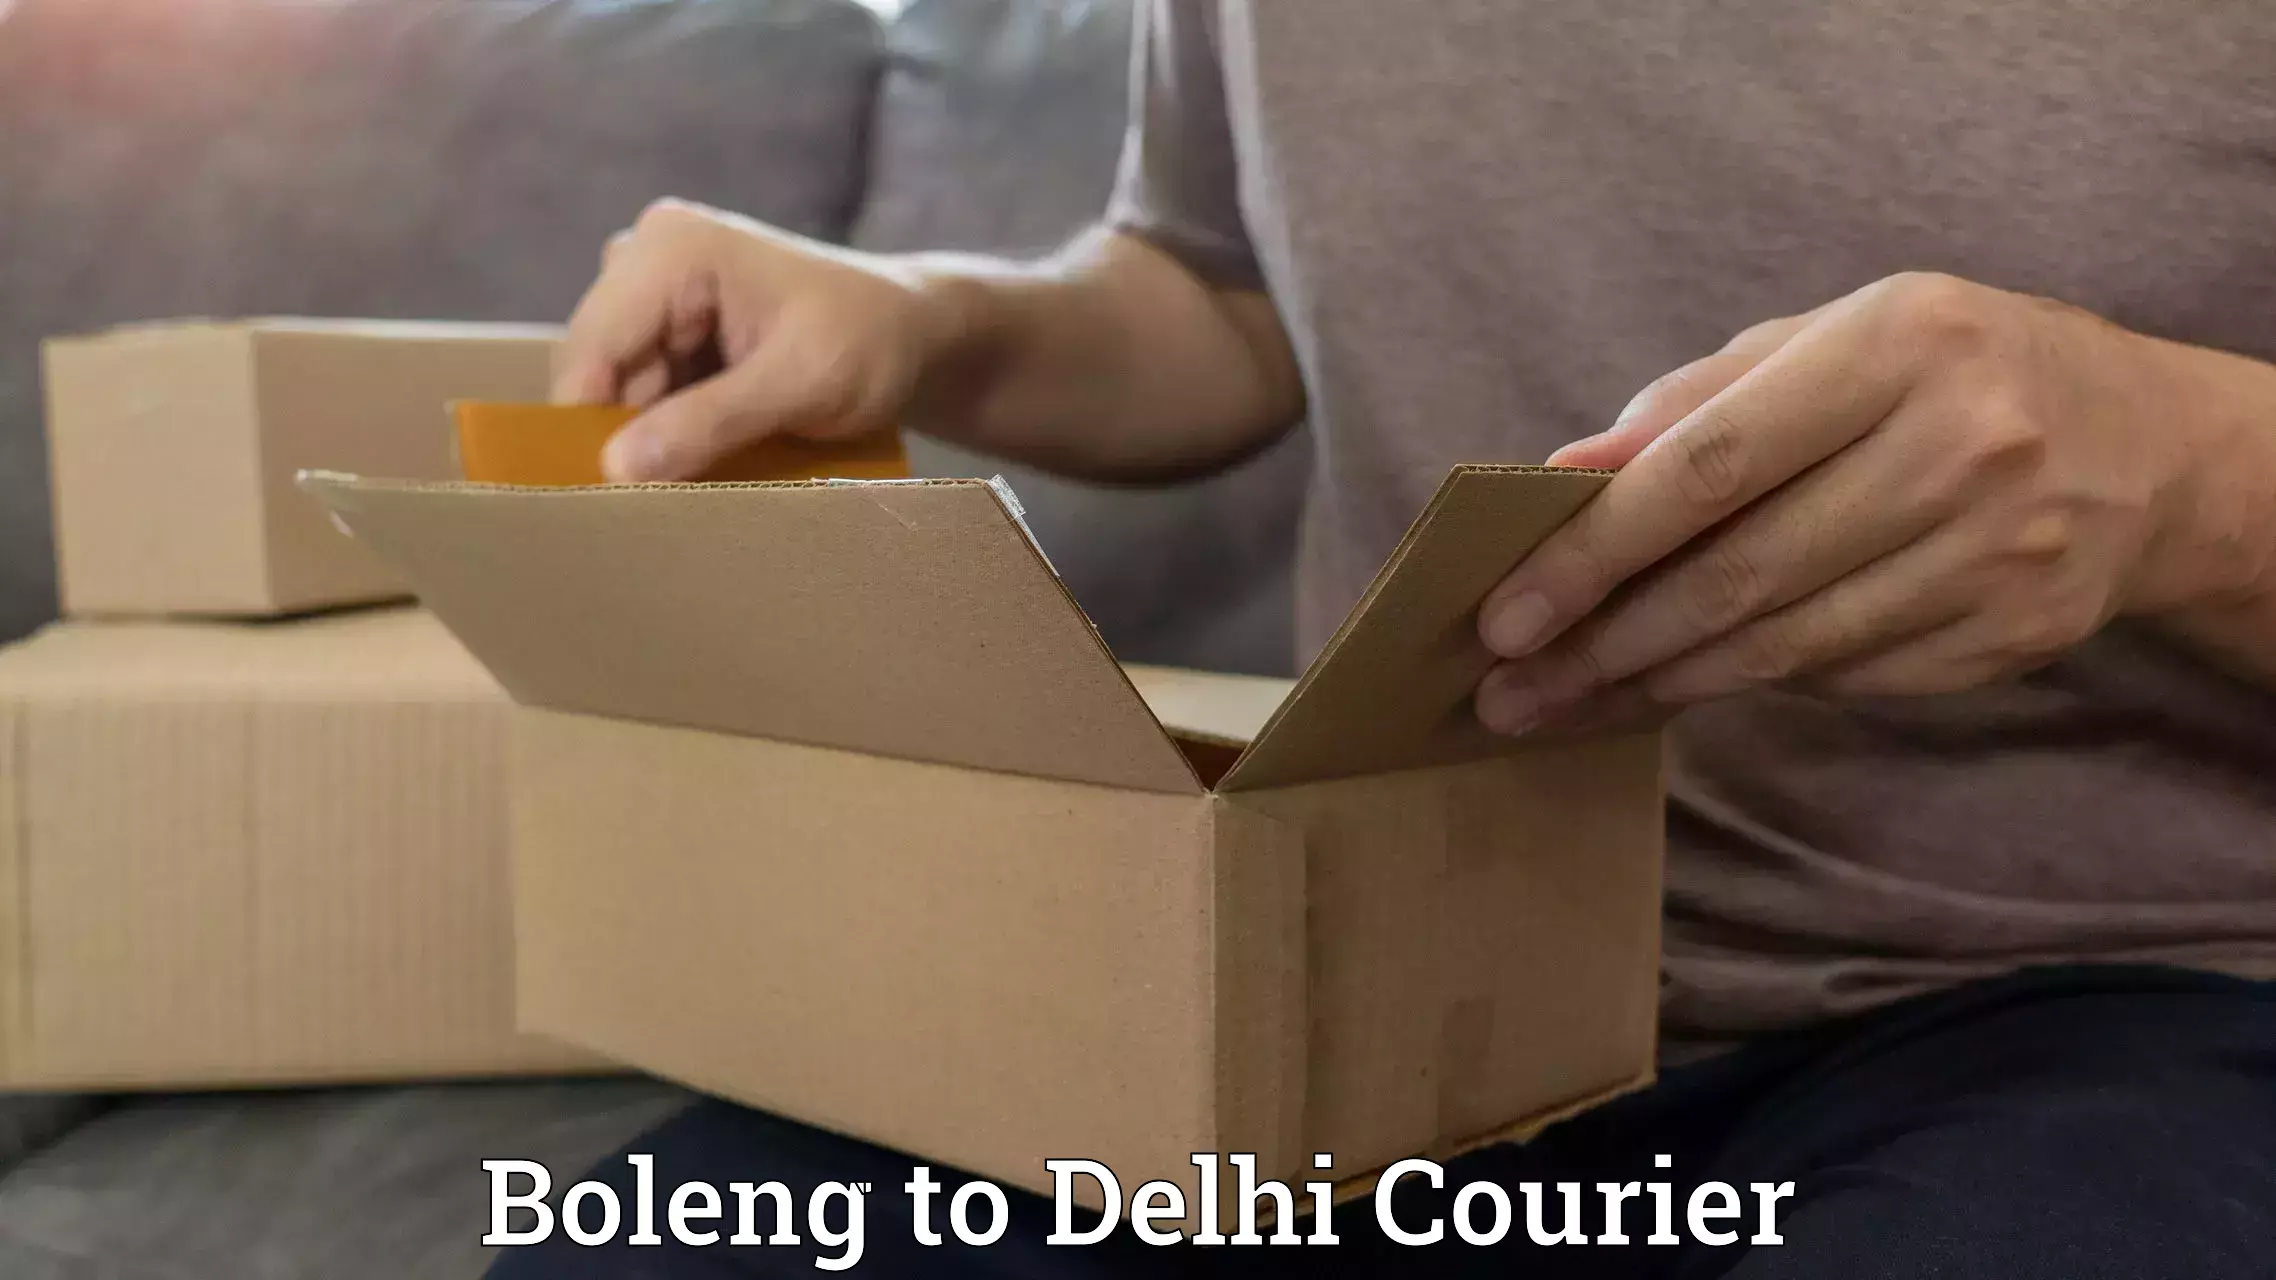 Versatile courier options Boleng to Delhi